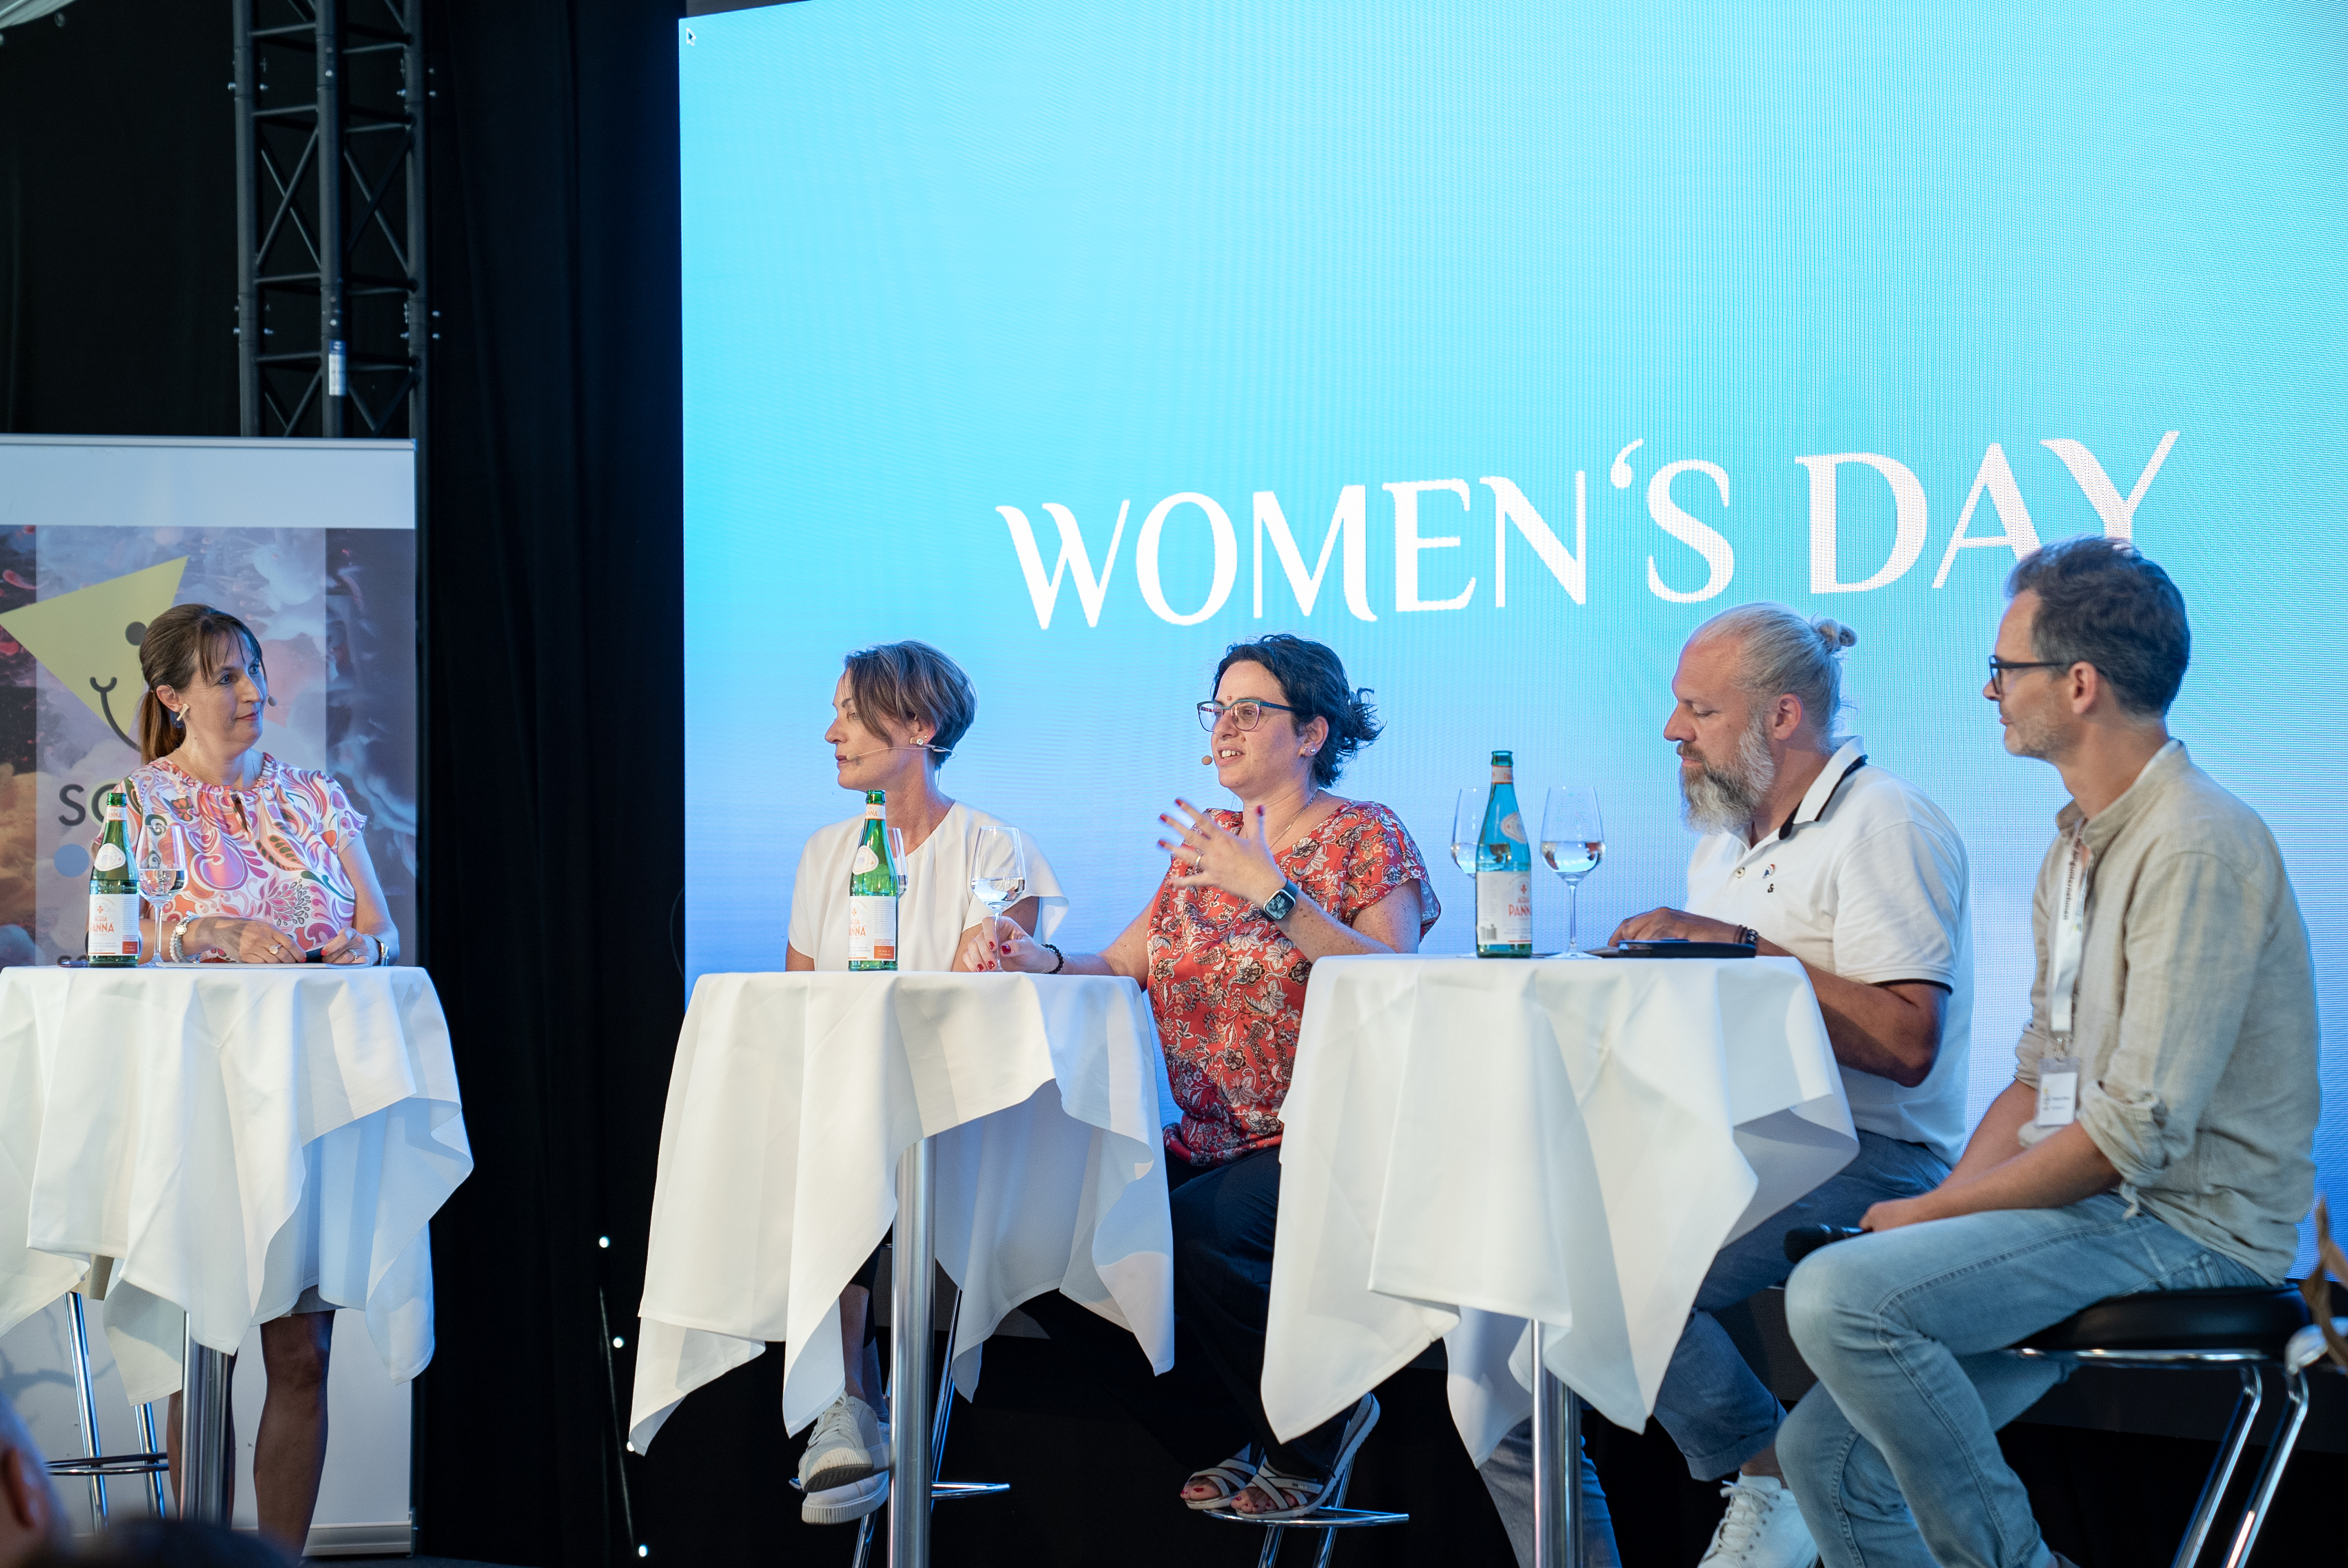 Podiumsdiskussion über "Women Skills" mit Regula Mäder, Mäder & Partner AG, Dr. Daniela Marino, Cutiss AG, Roland Meyer, REMAX Limmattal, und Romano Strebel, WeTalents AG.